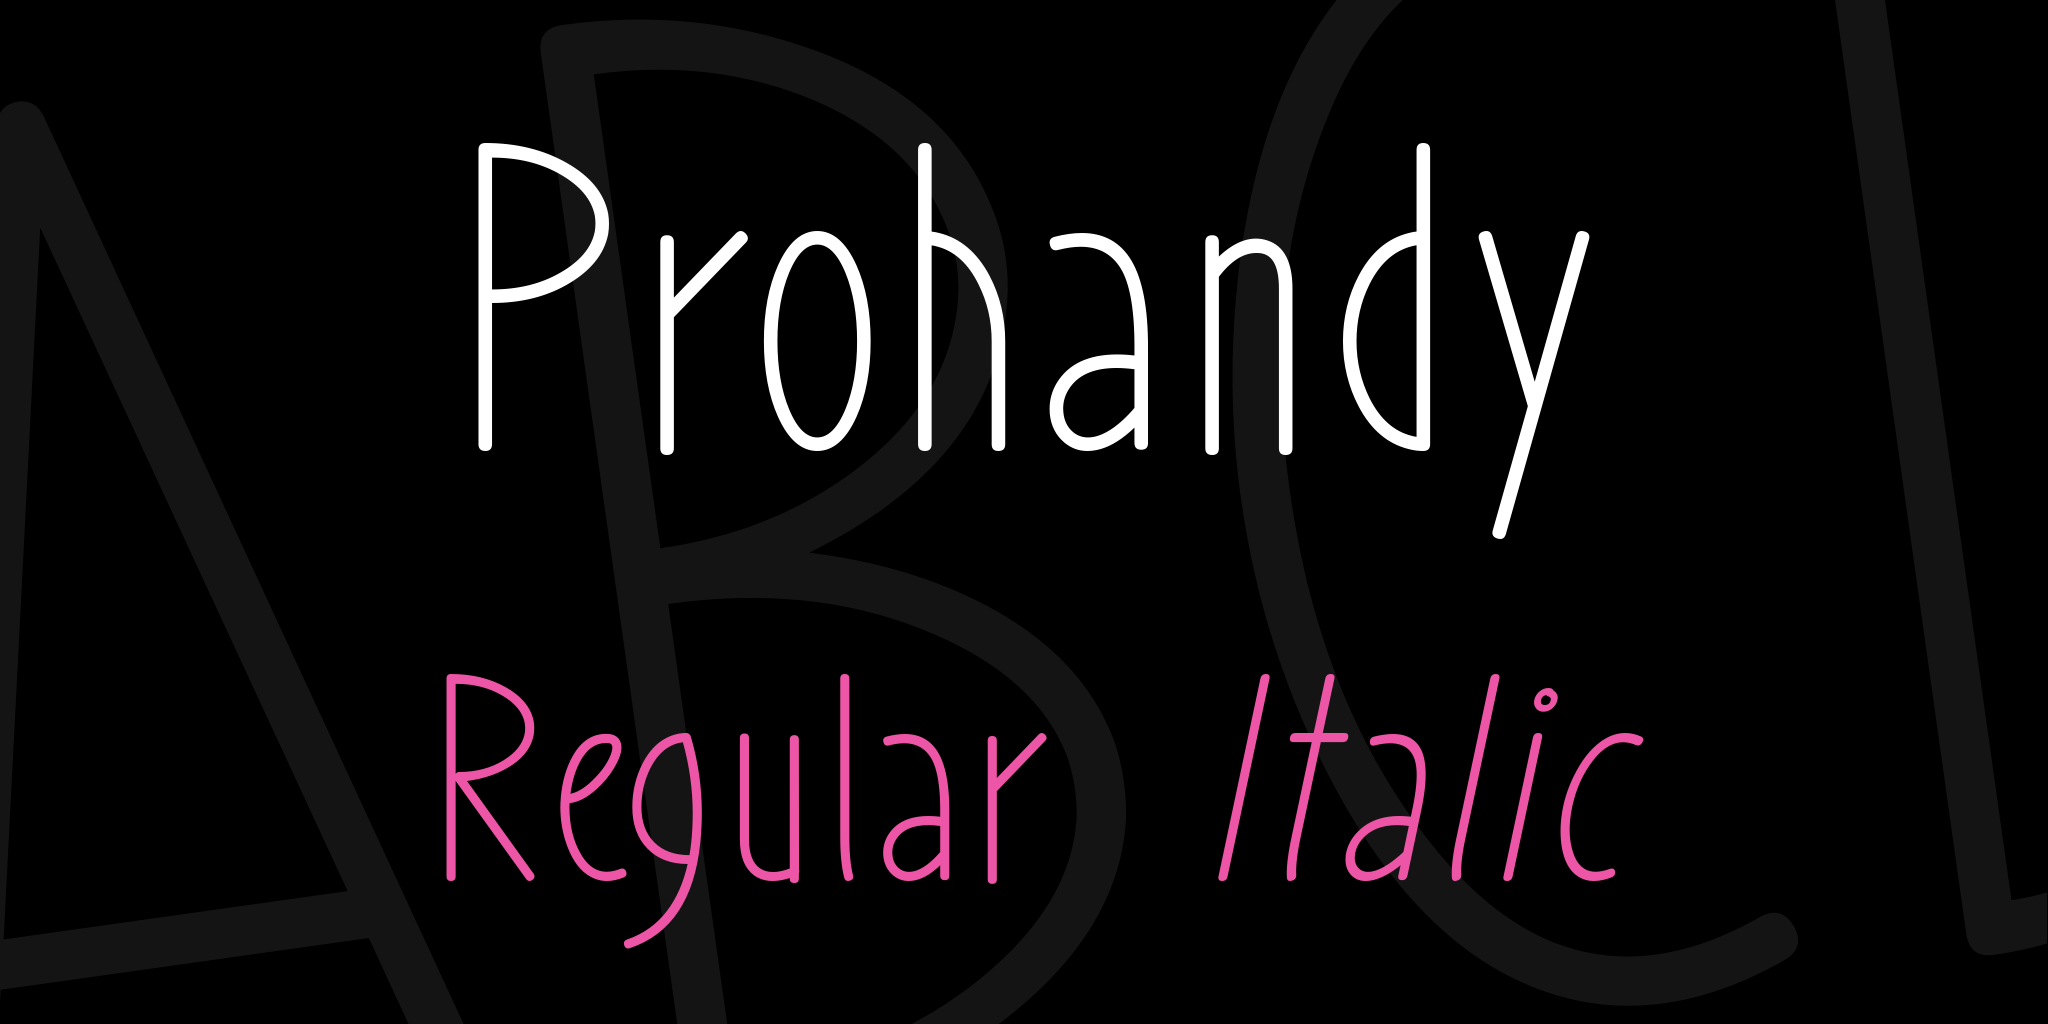 Prohandy